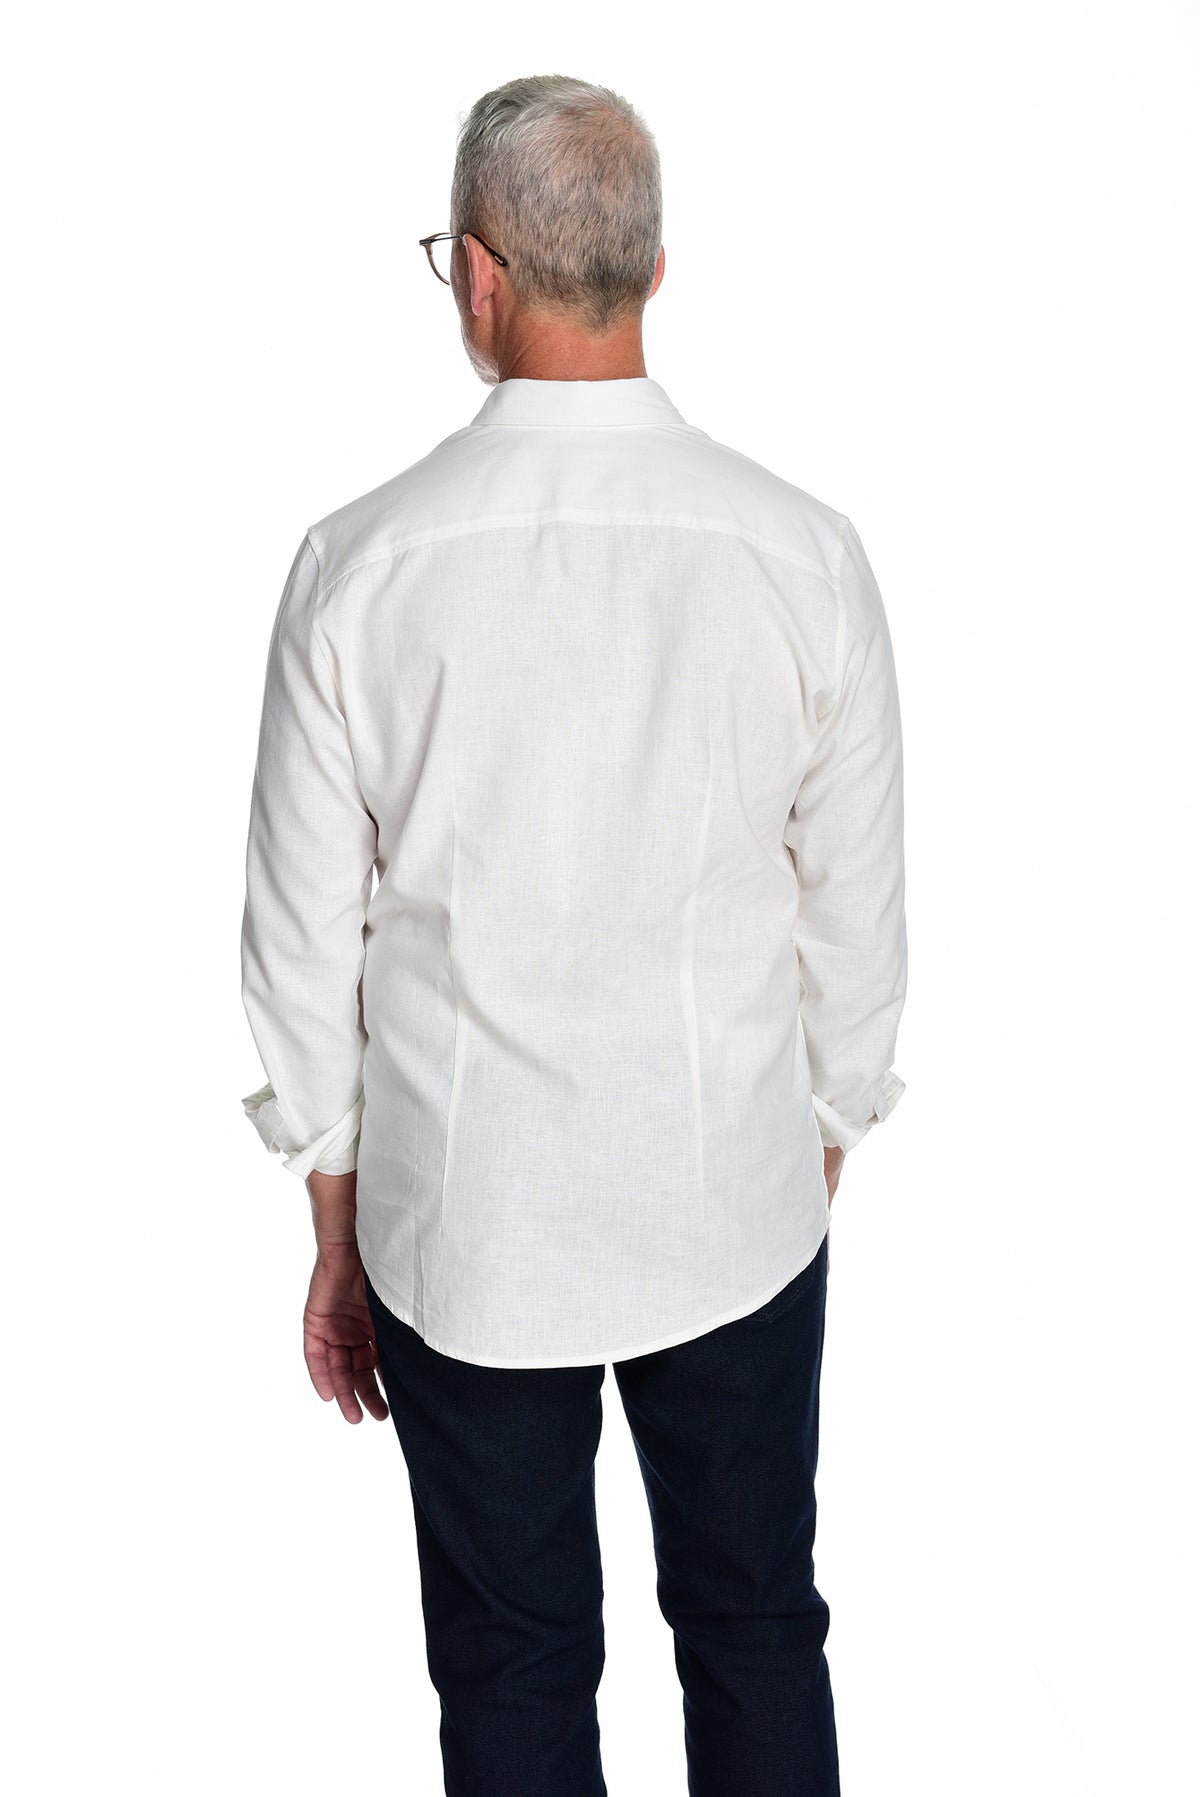 Men&#39;s Long Sleeve Button Down Shirt the Bastille Shirt by Fisher + Baker White Backside